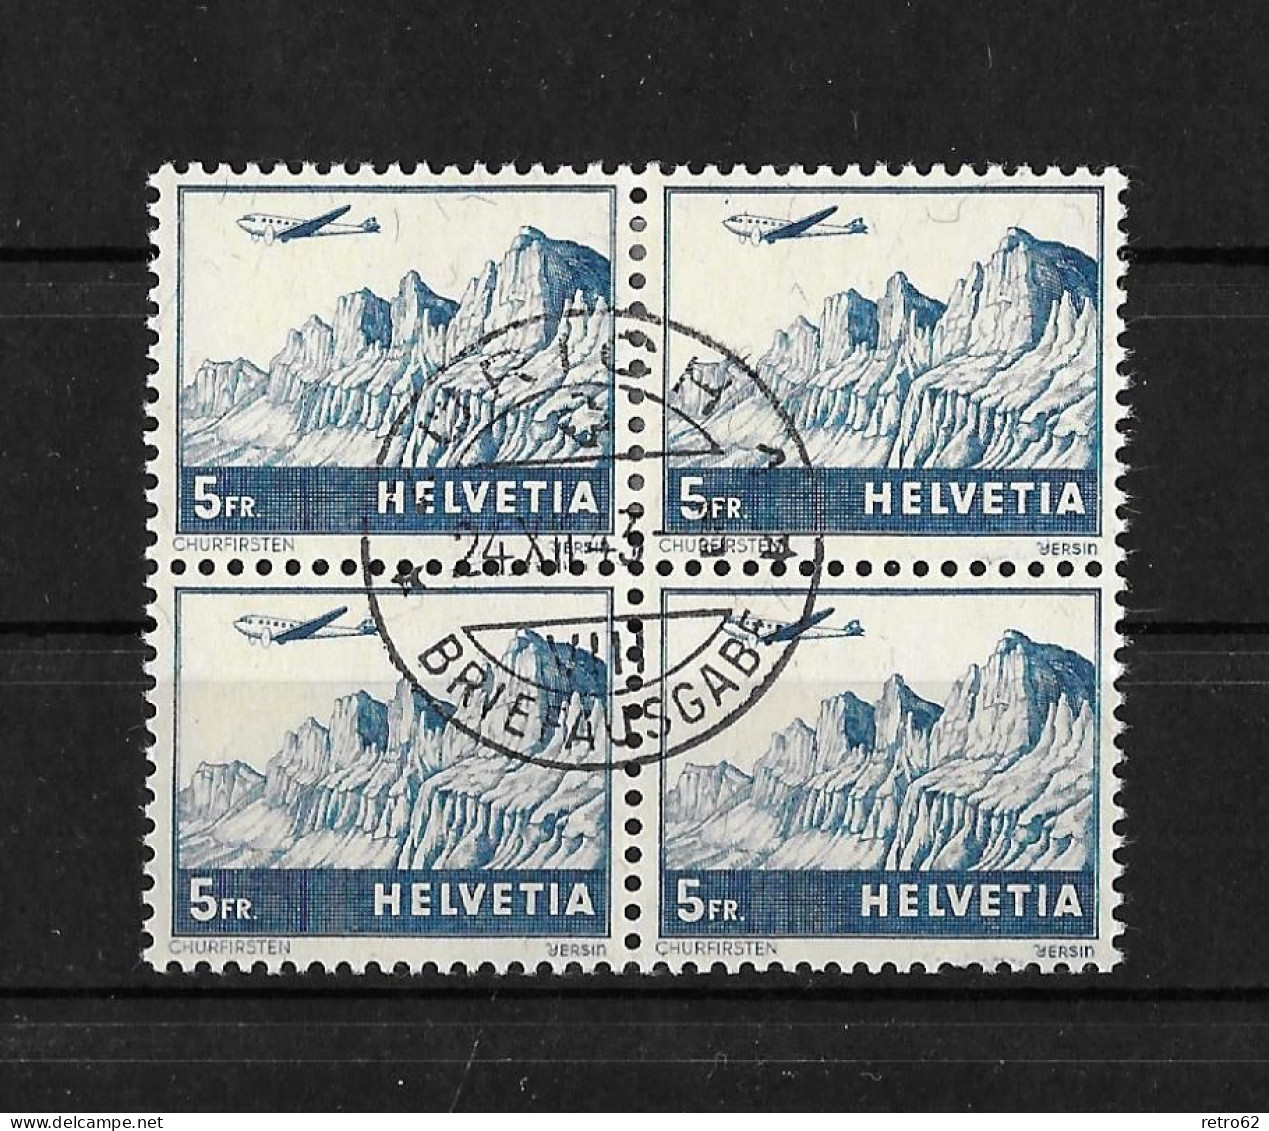 1941 LANDSCHAFTEN UND FLUGZEUGE ►Churfirsten CHF 5.-  Im Viererblock      ►SBK-F34, CHF 140.-◄ - Used Stamps